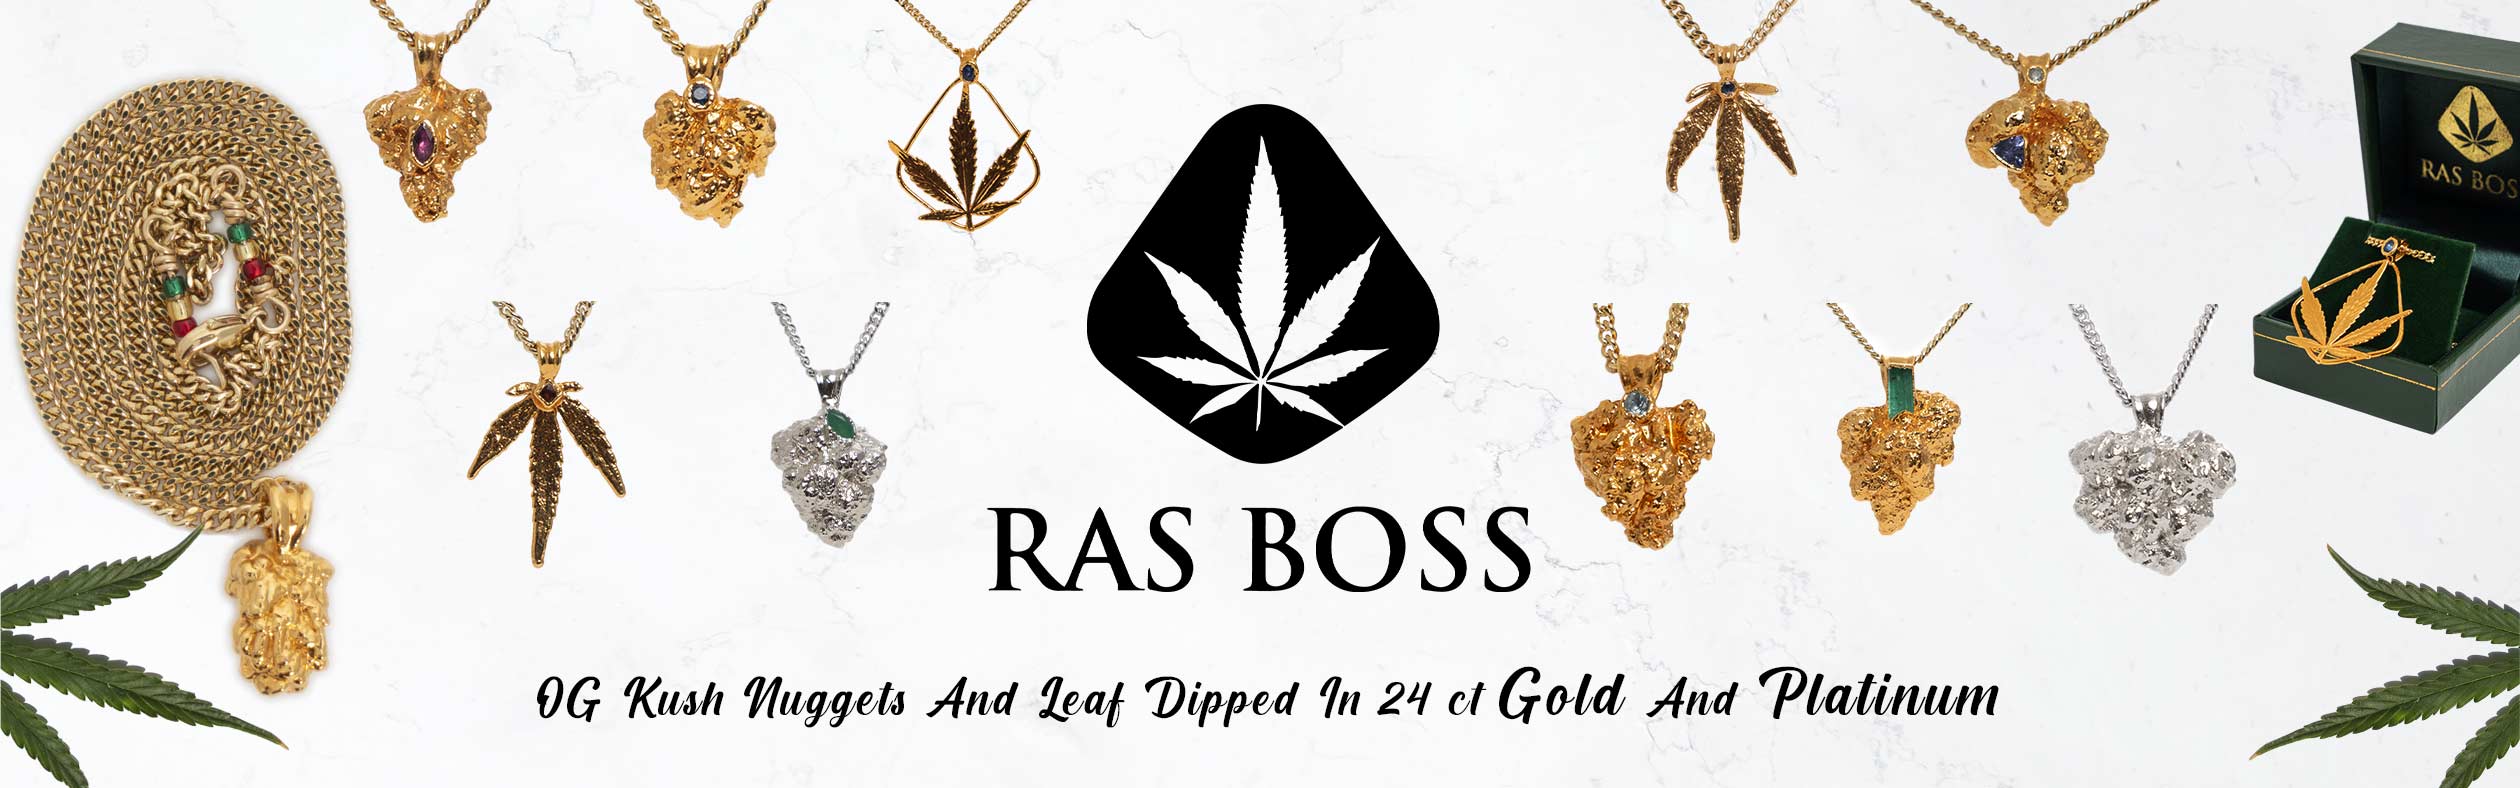 Gold Chain Ras Boss